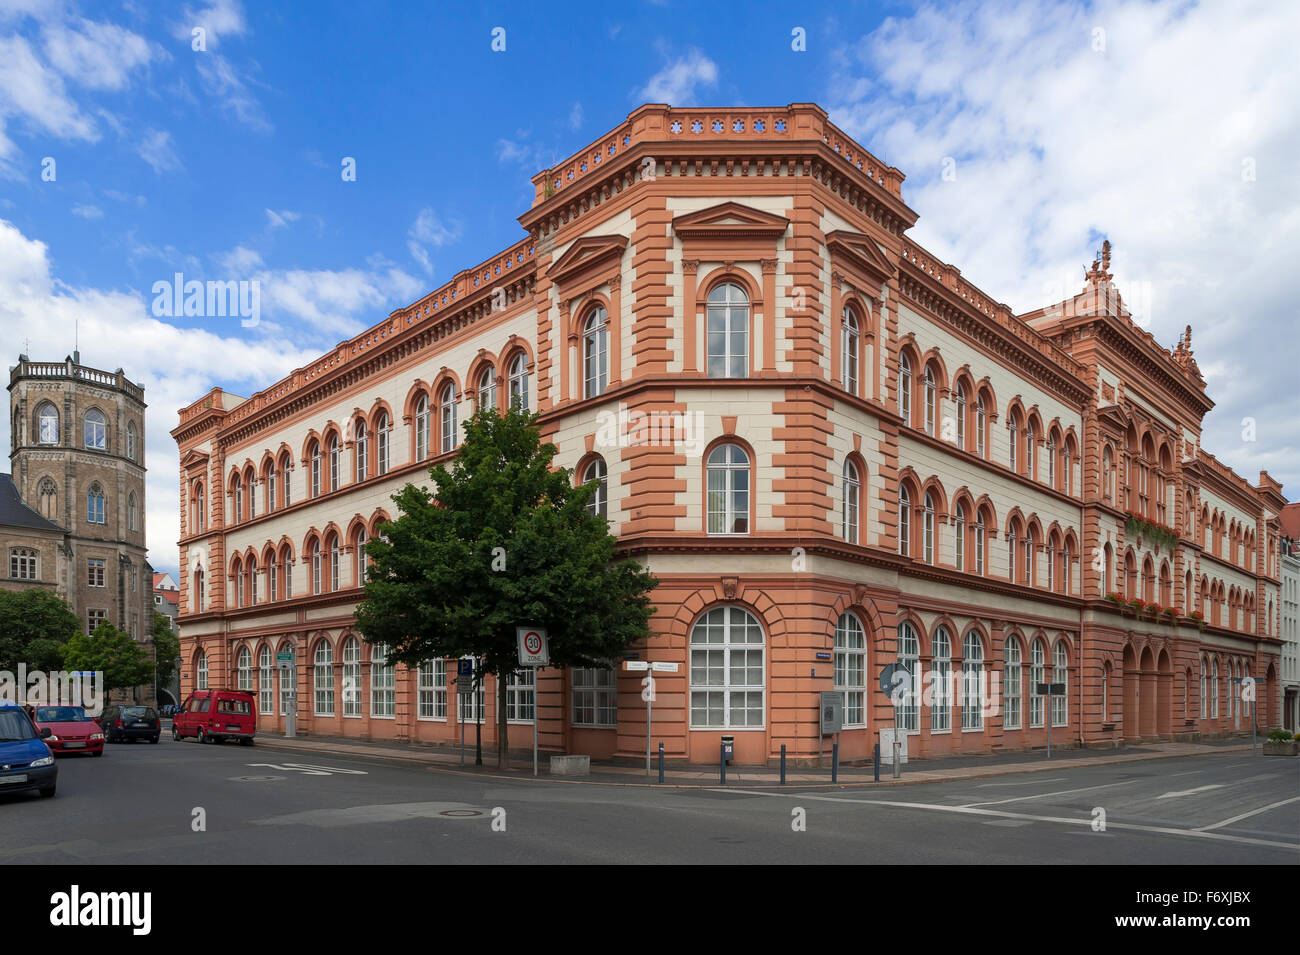 Middle school, built in 1875, city, Zgorzelec, Oberlausitz, Saxony, Germany Stock Photo